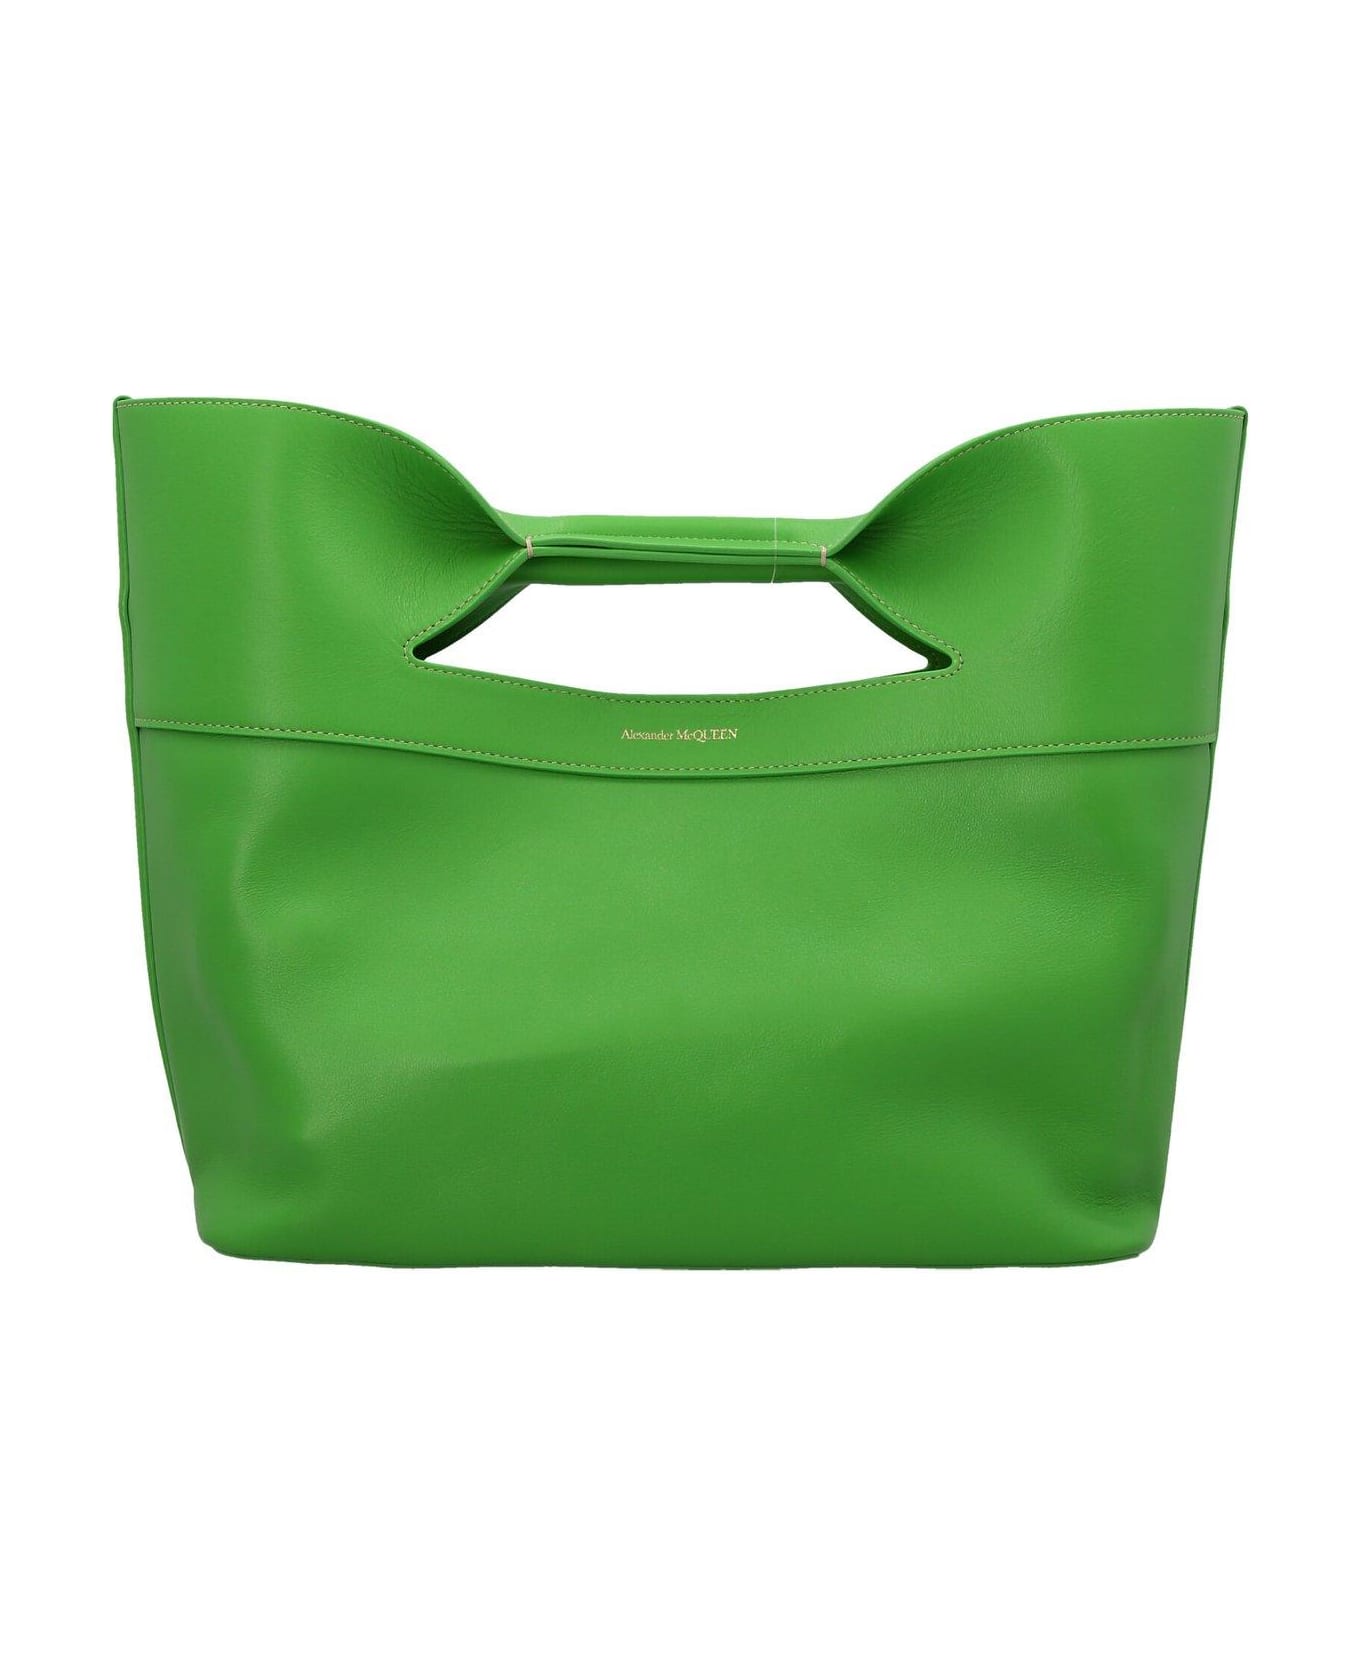 Alexander McQueen Logo-printed Top Handle Bag - Green トートバッグ